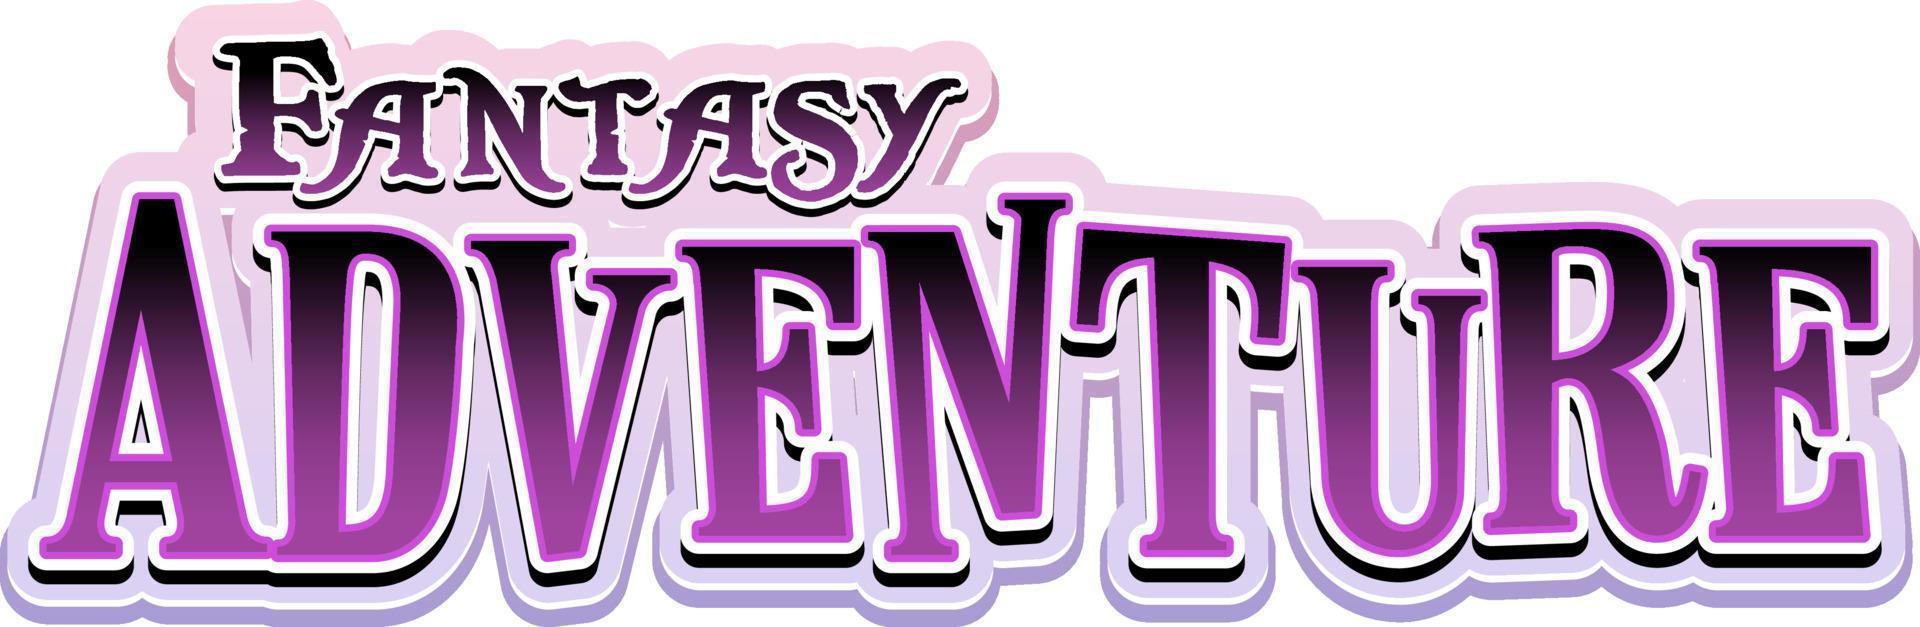 Fantasy Adventure text word in cartoon style vector